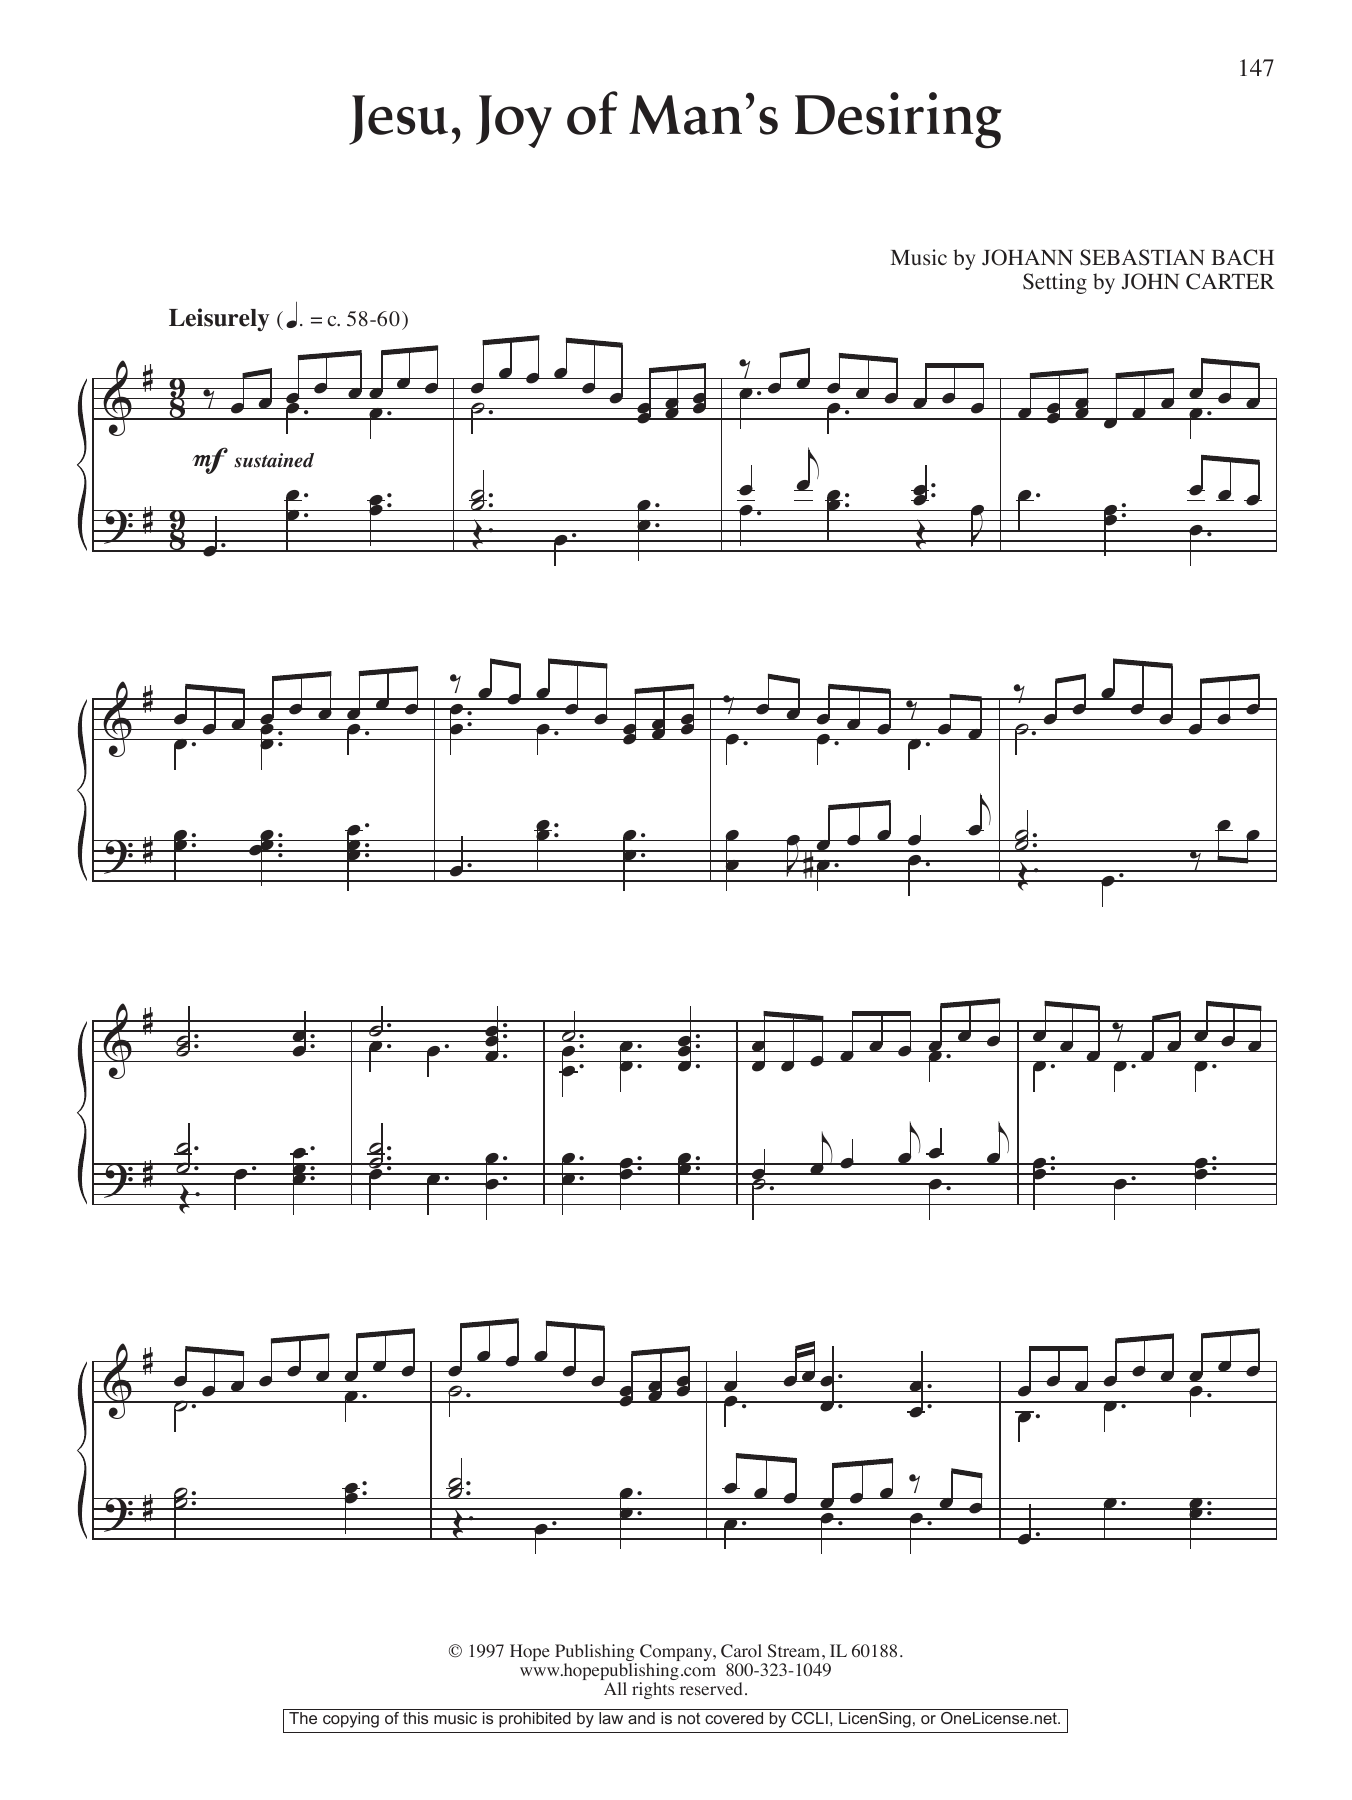 John Carter Jesu, Joy of Man's Desiring Sheet Music Notes & Chords for Piano Solo - Download or Print PDF